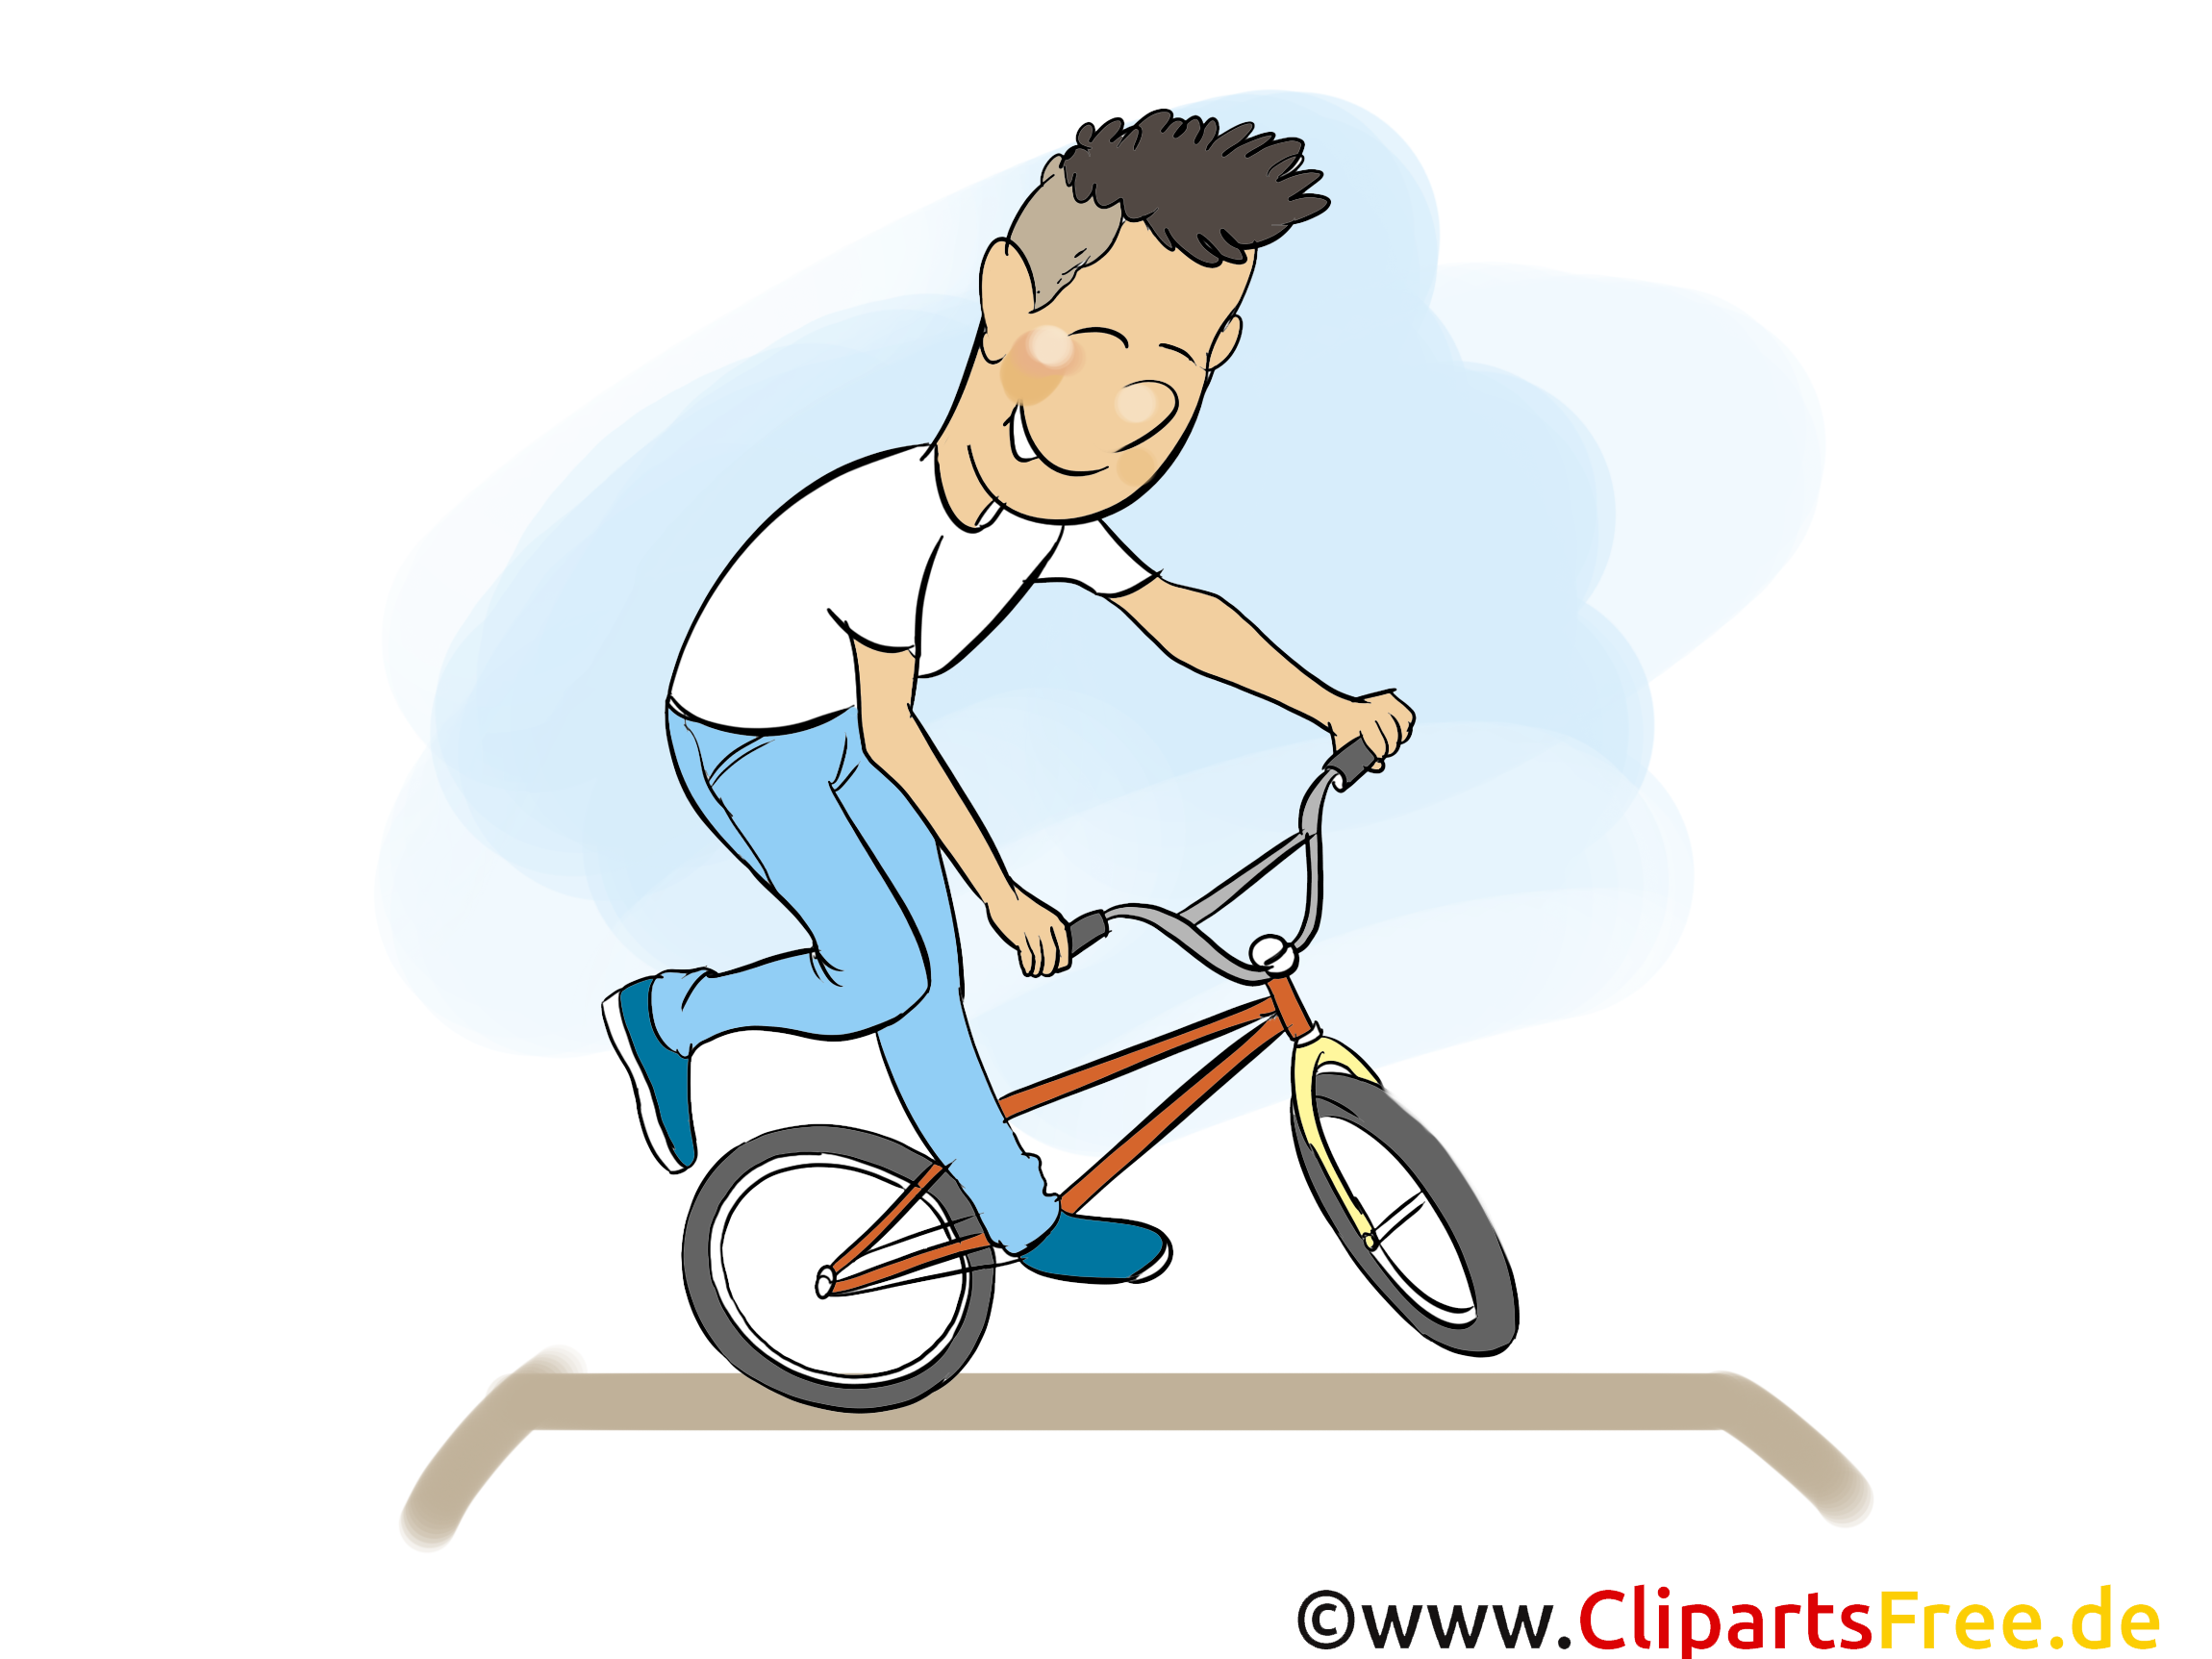 Vélo de sport dessin gratuit à télécharger